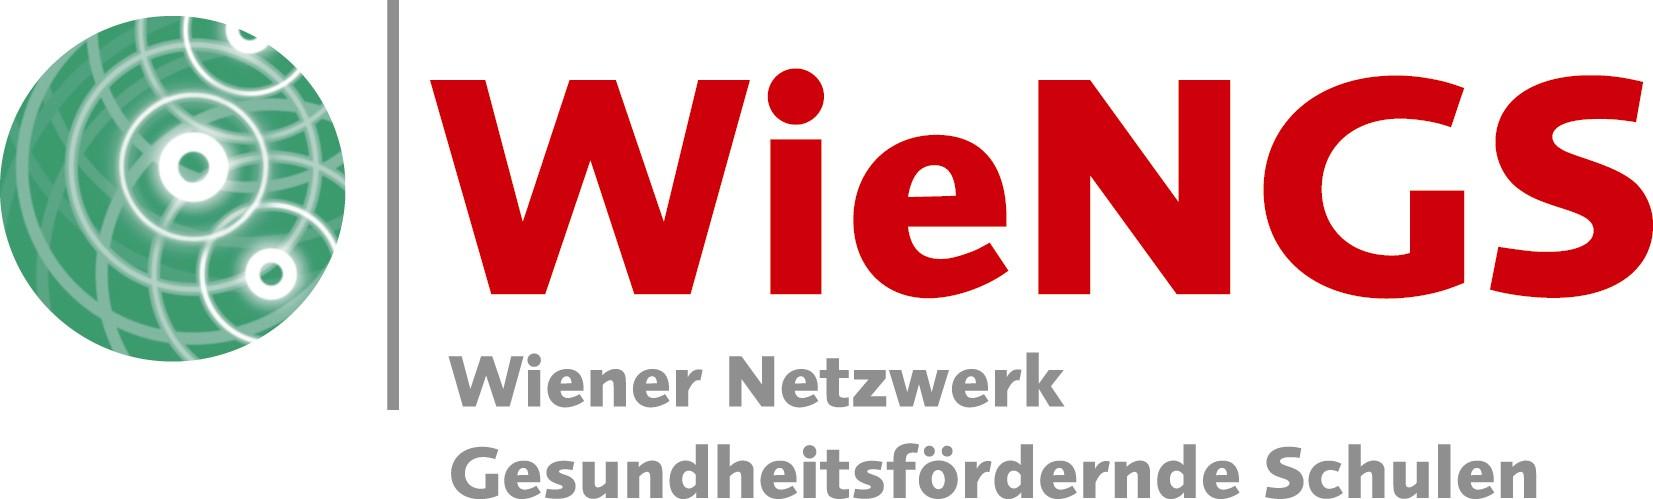 WieNGS+Logo